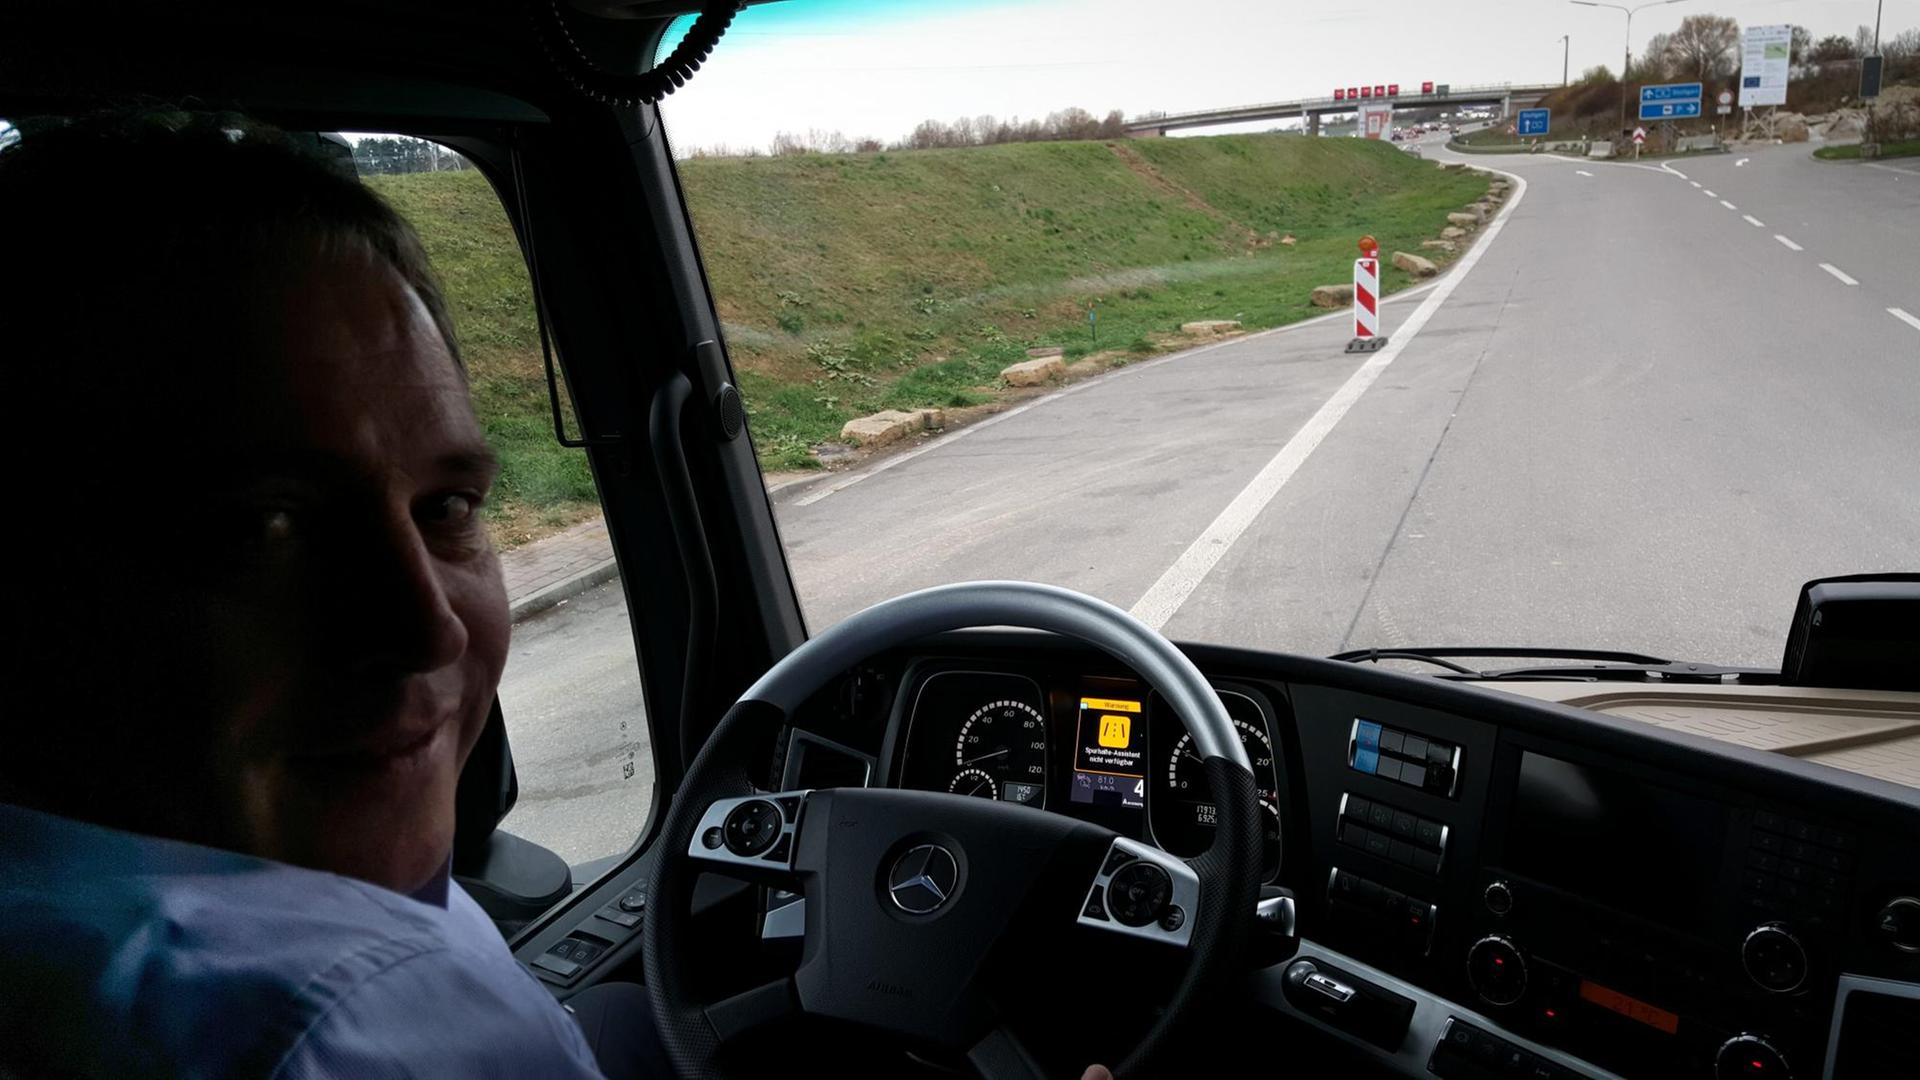 Martin Zeilinger, Leiter der Lkw-Vorentwicklung bei Daimler, am Steuer des zum Teil autonom fahrenden Lkw